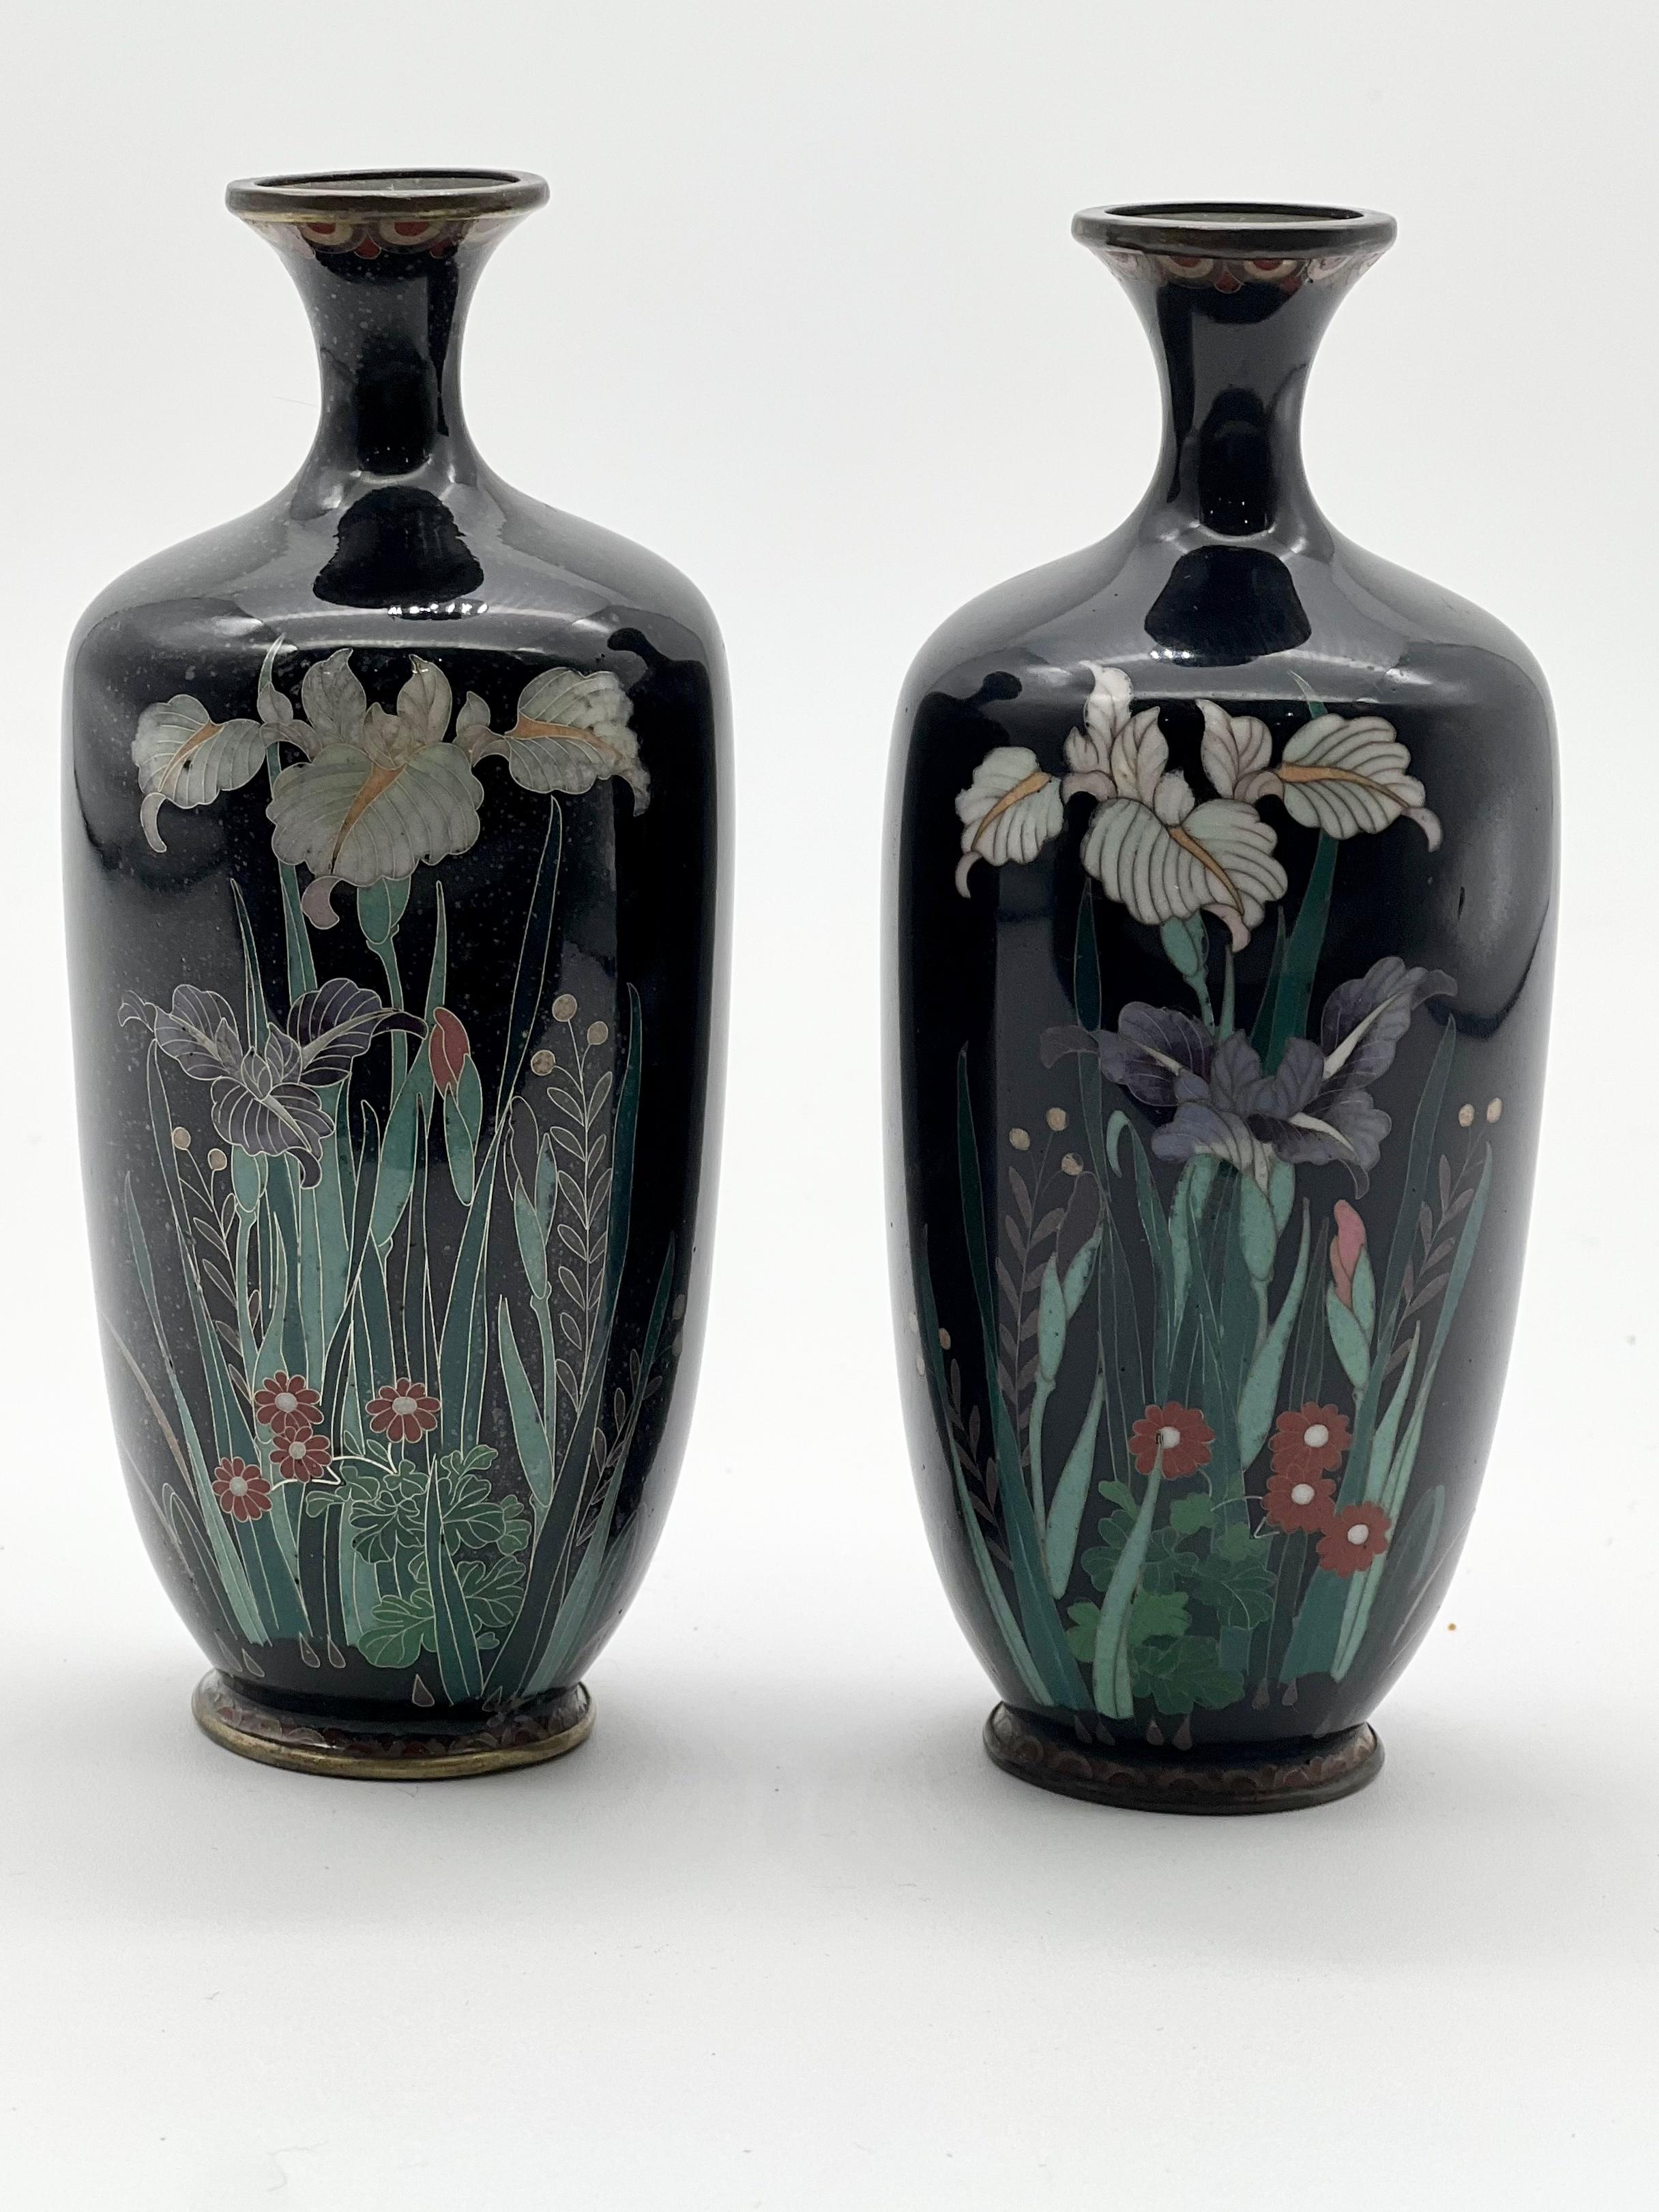 Paire de vases ovoïdes en émail cloisonné japonais de l'atelier Hayashi Chuzo Kodenji, période Meiji.

Vases ovoïdes et effilés bleu foncé à petit col évasé, finition miroir, décorés de fil d'argent fin et d'émaux polychromes avec des fleurs d'iris